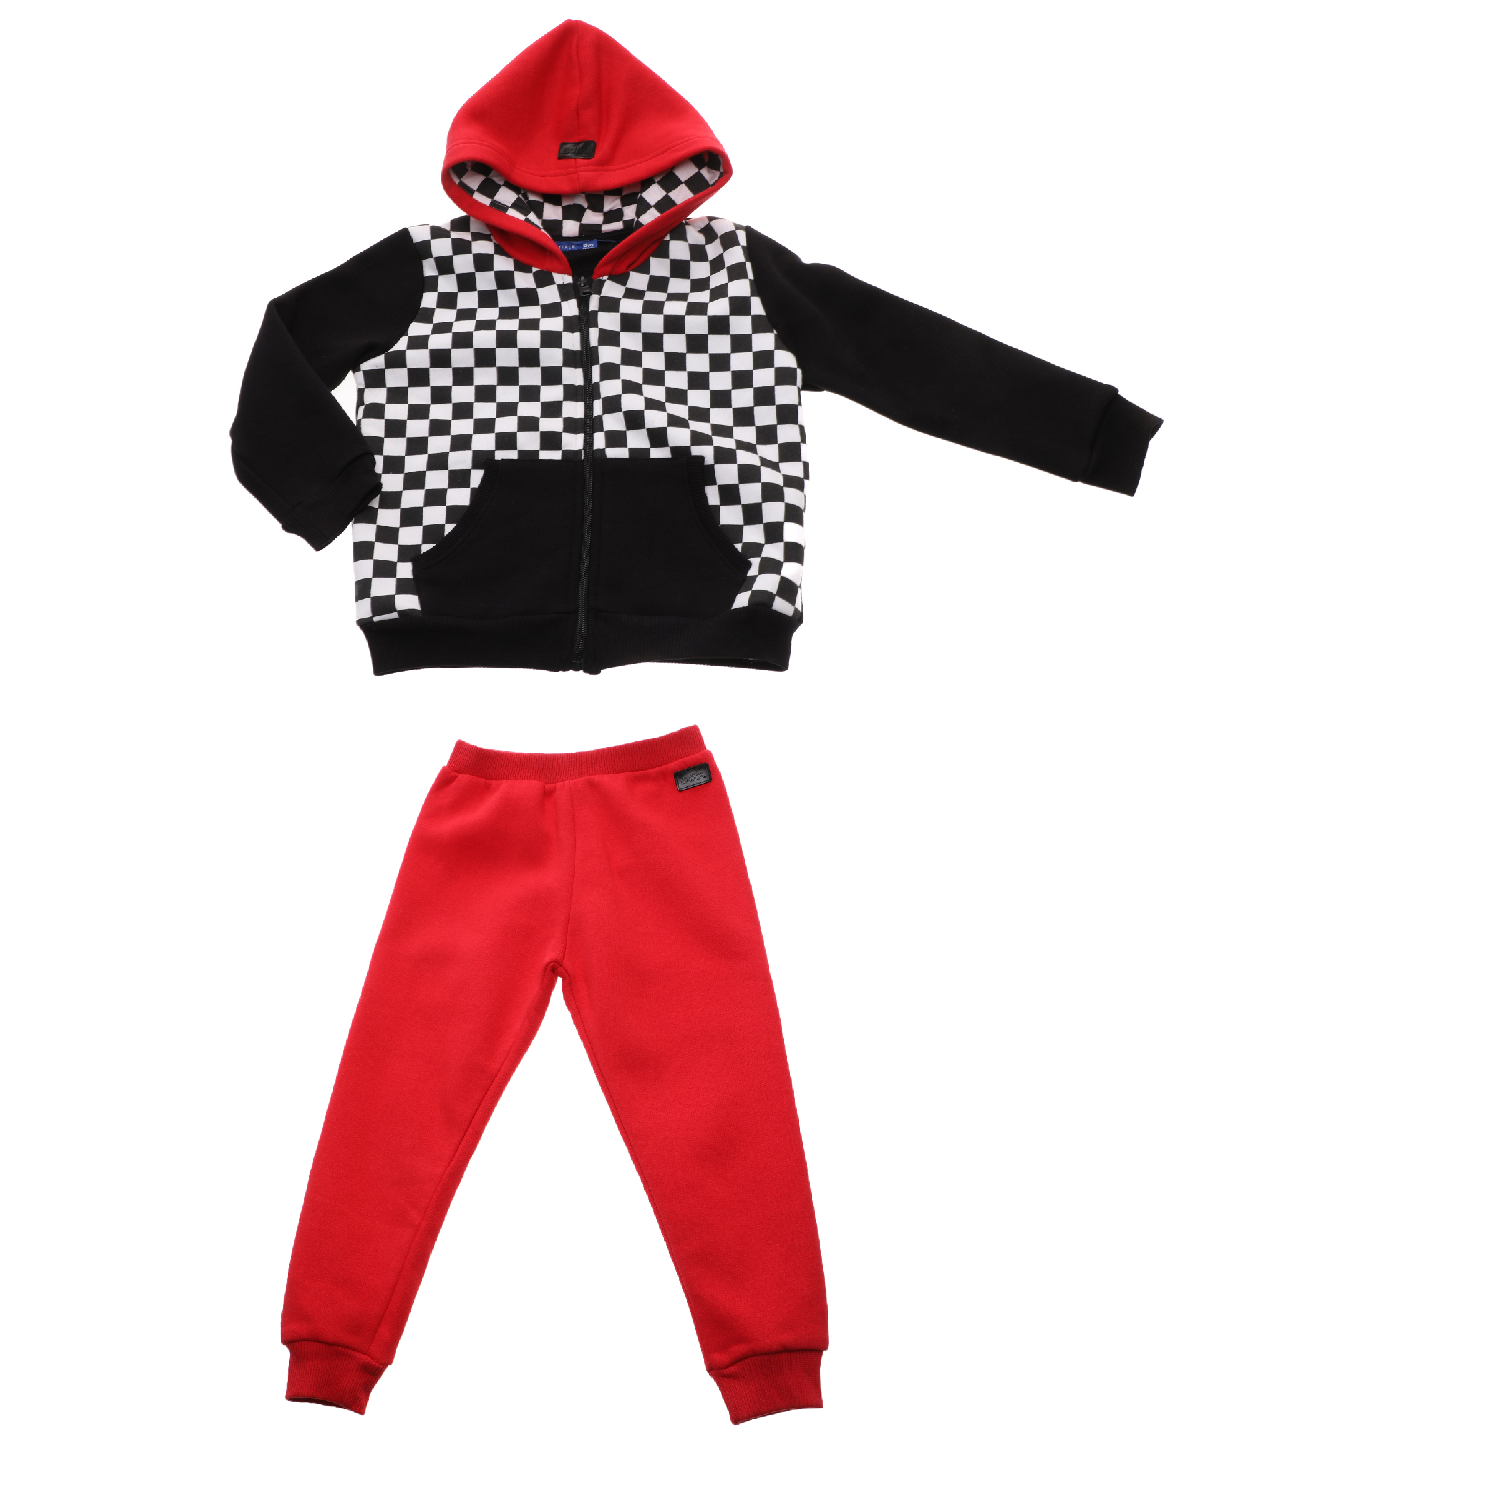 Παιδικά/Boys/Ρούχα/Σετ BODYTALK - Παιδικό σετ φόρμας BODYTALK κόκκινο μαύρο